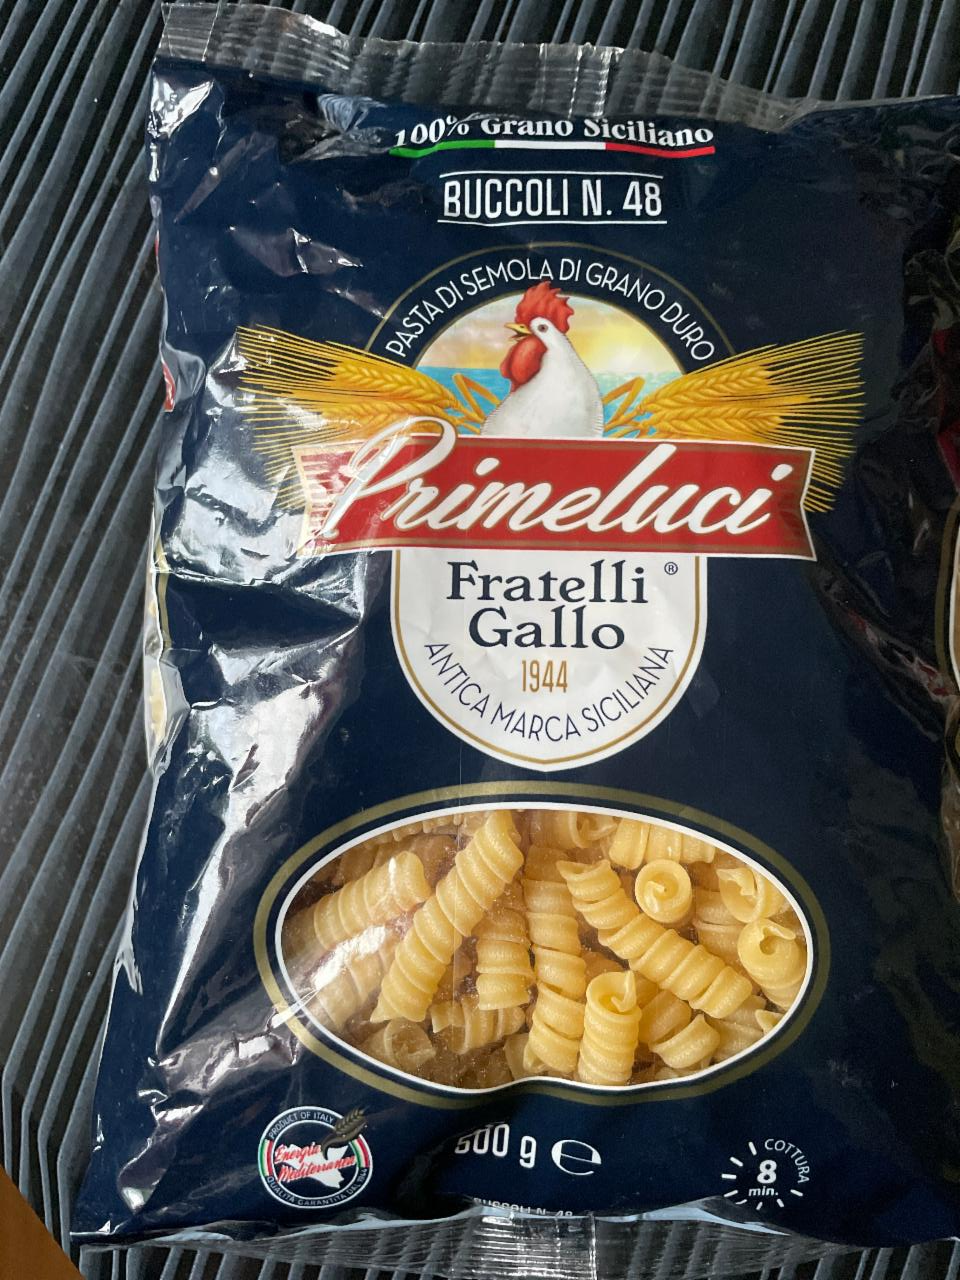 Фото - Макаронные изделия Buccoli №48 Primeluci Fratelli Gallo